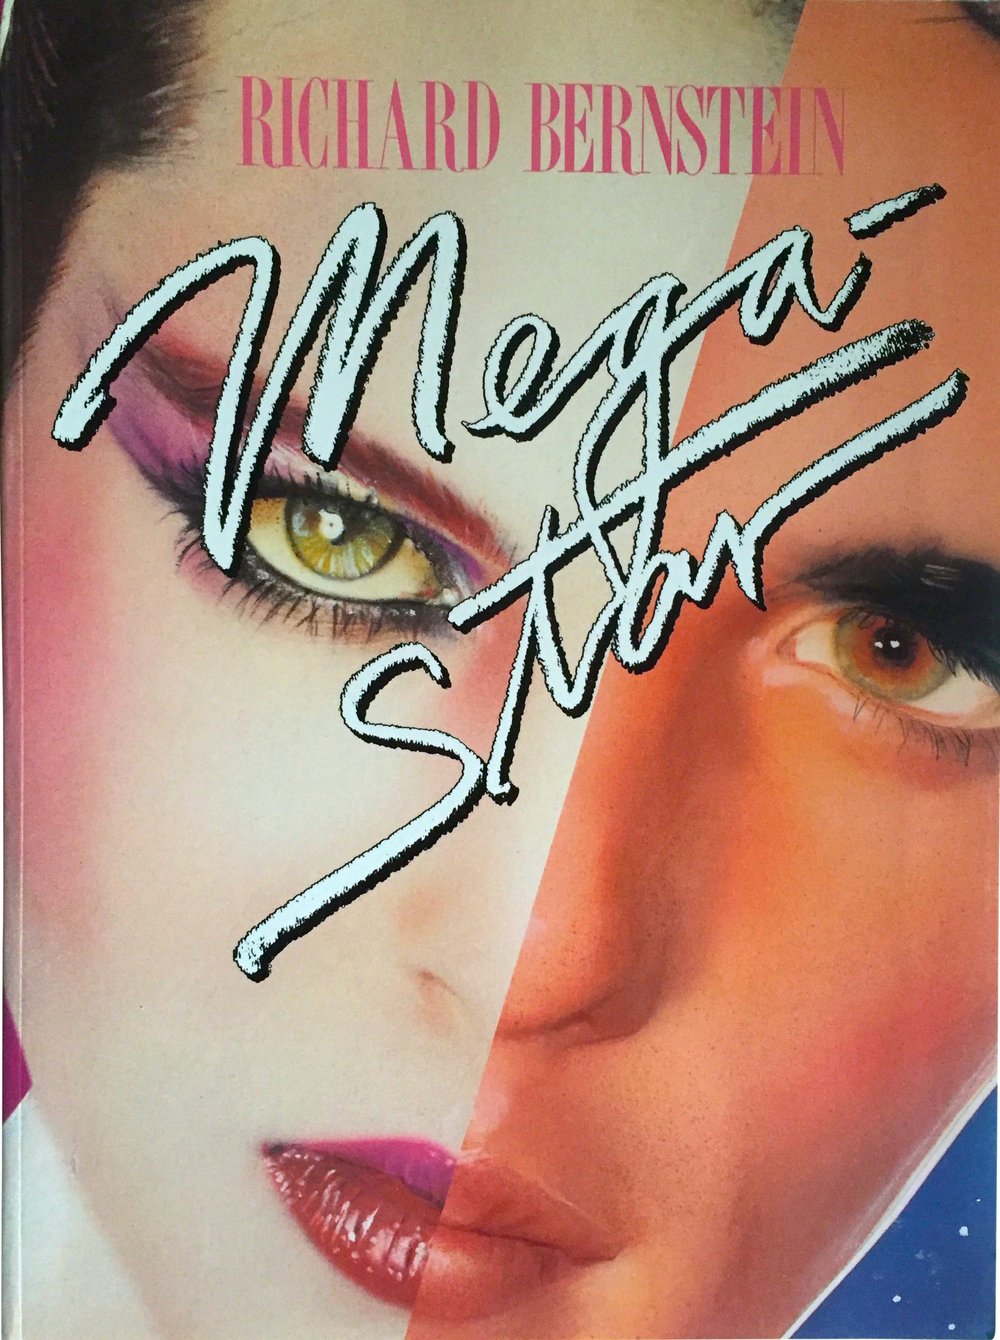 Megastar (1984)